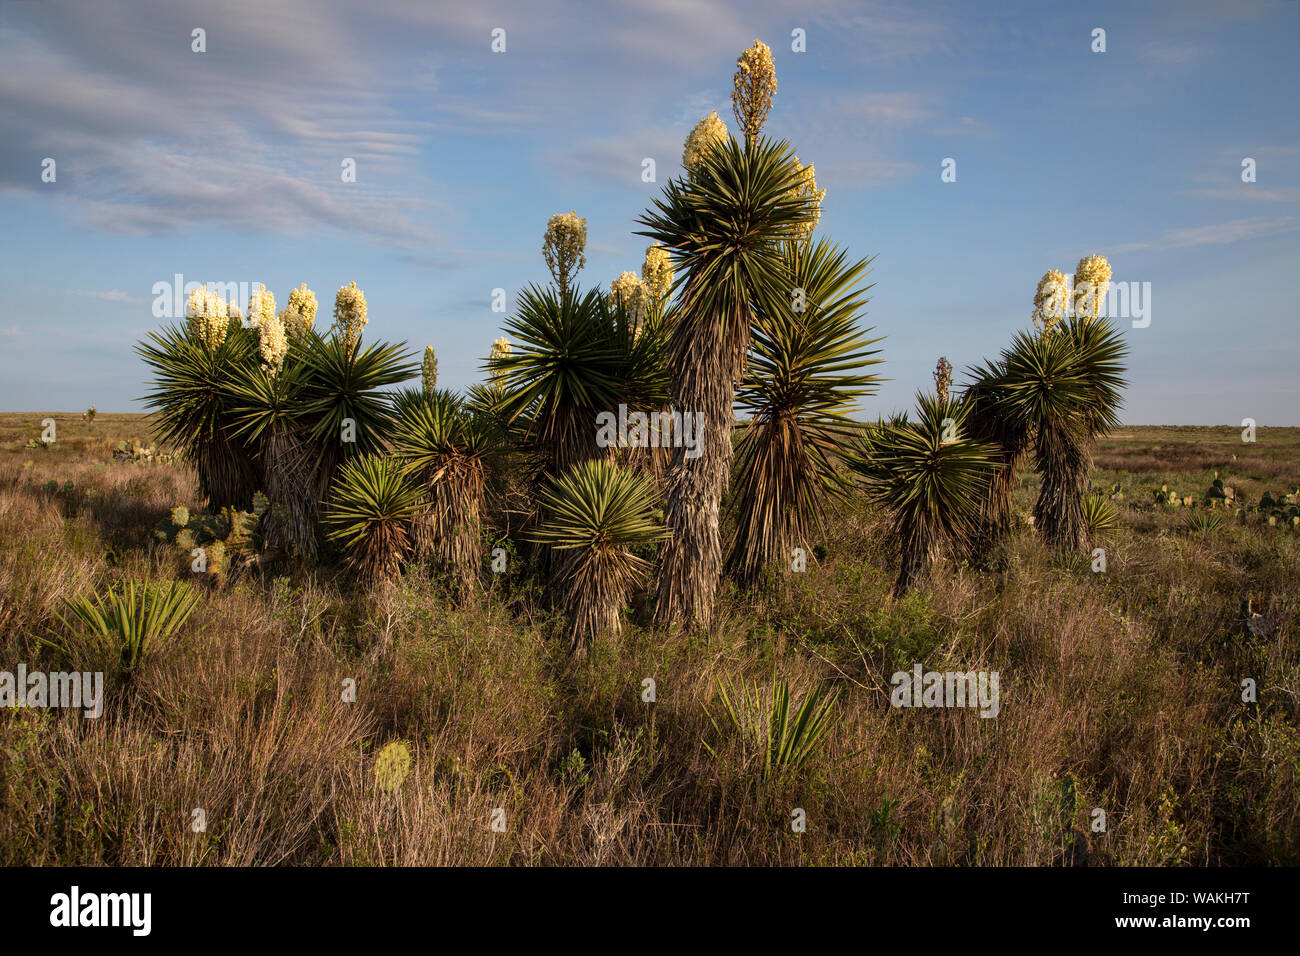 Pugnale spagnolo (Yucca treculeana) in fiore. Foto Stock